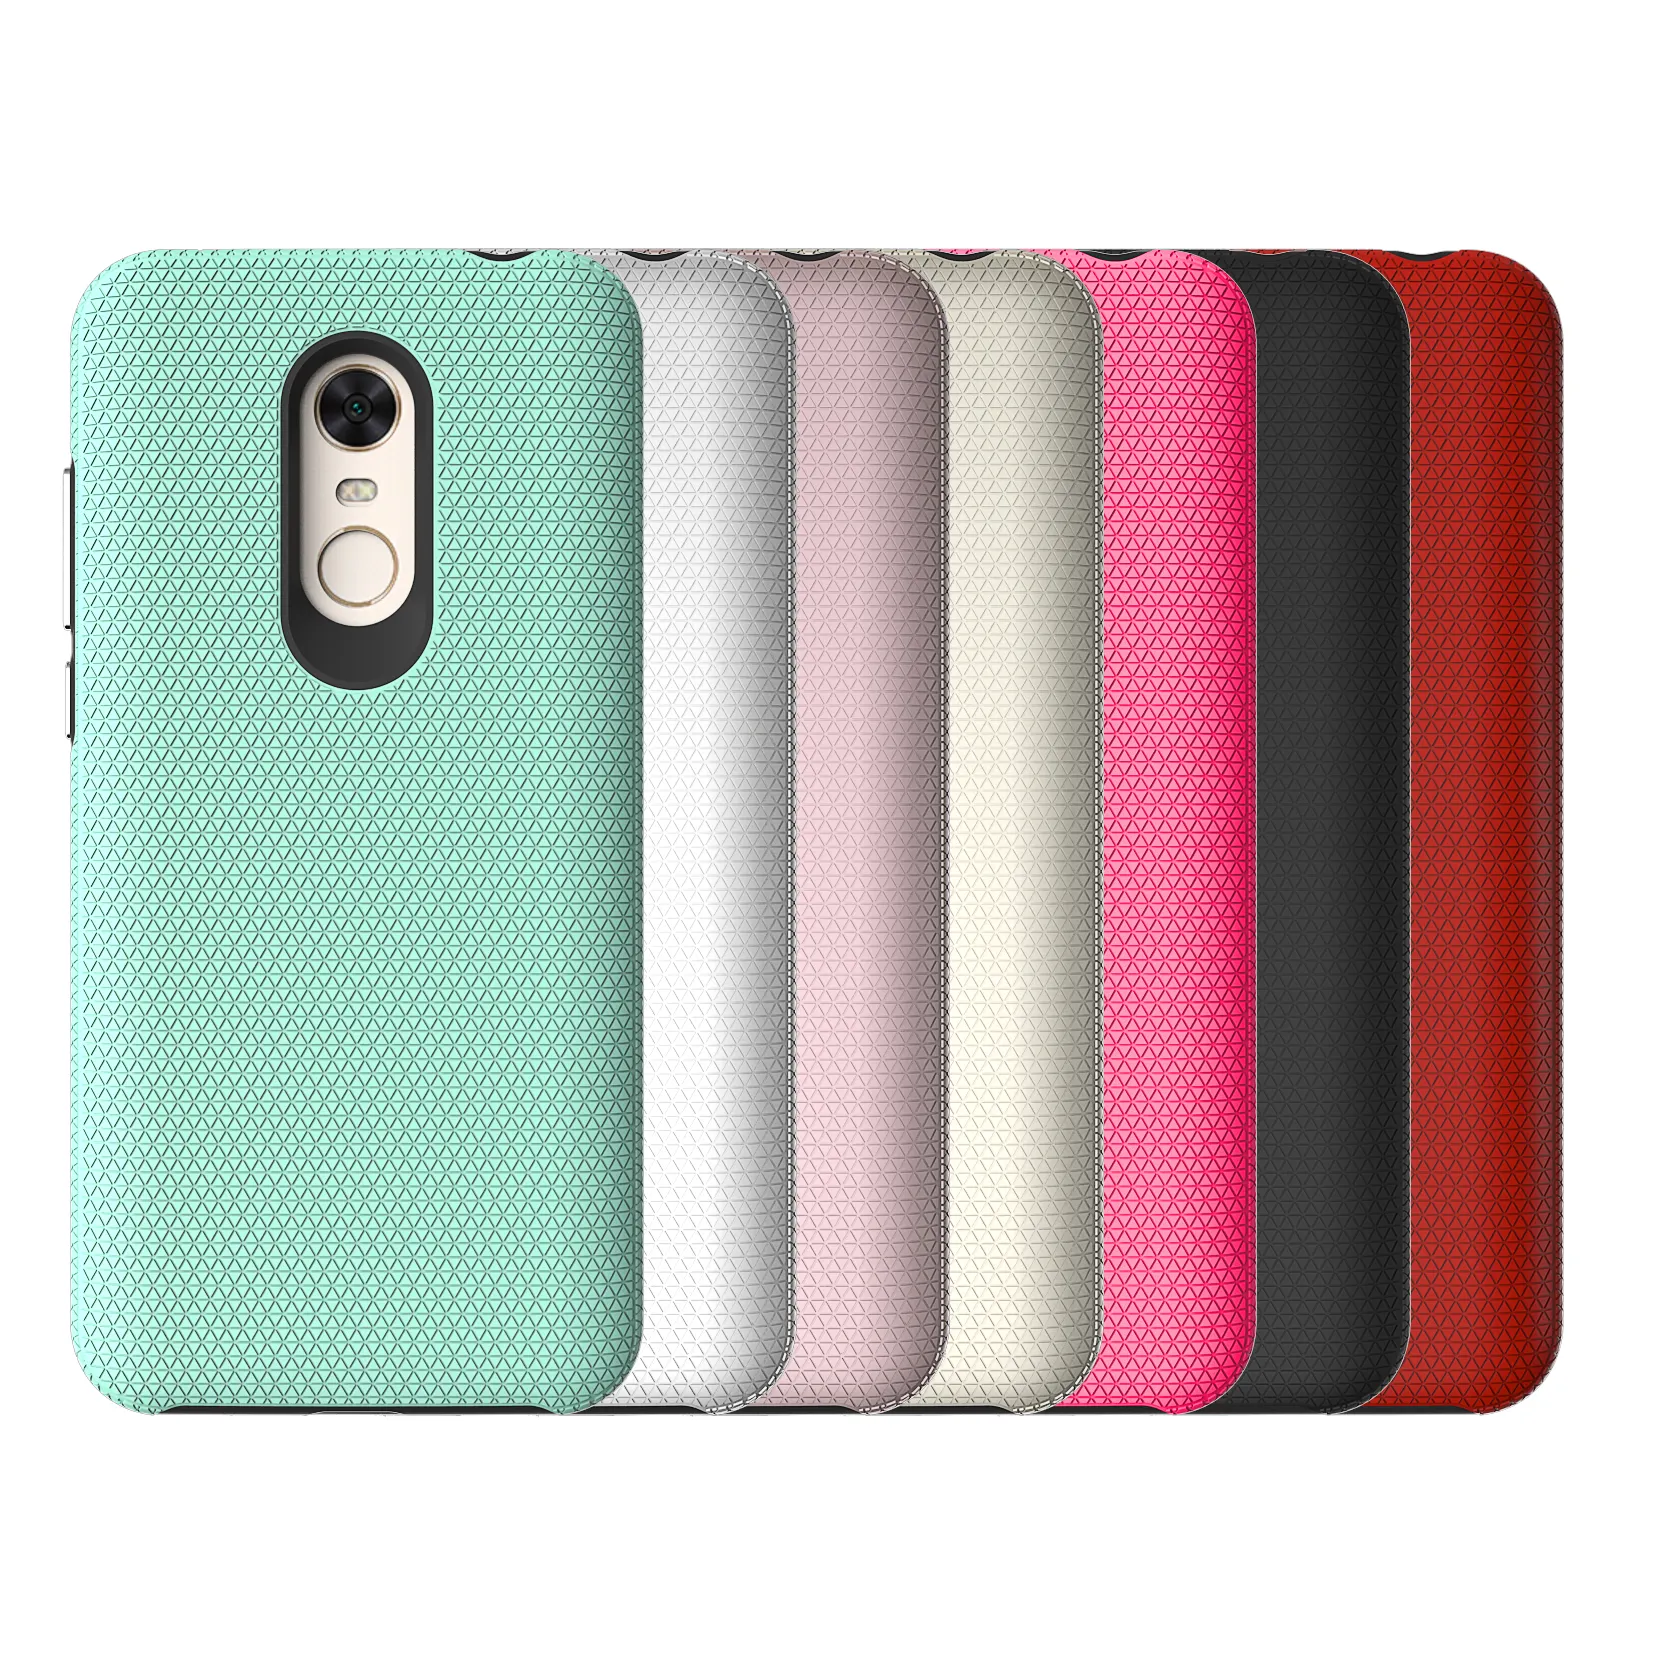 Artist design Triangle pattern Cellphone case for Xiaomi Redmi 5 5a 5plus TPU Soft Accessories back cover